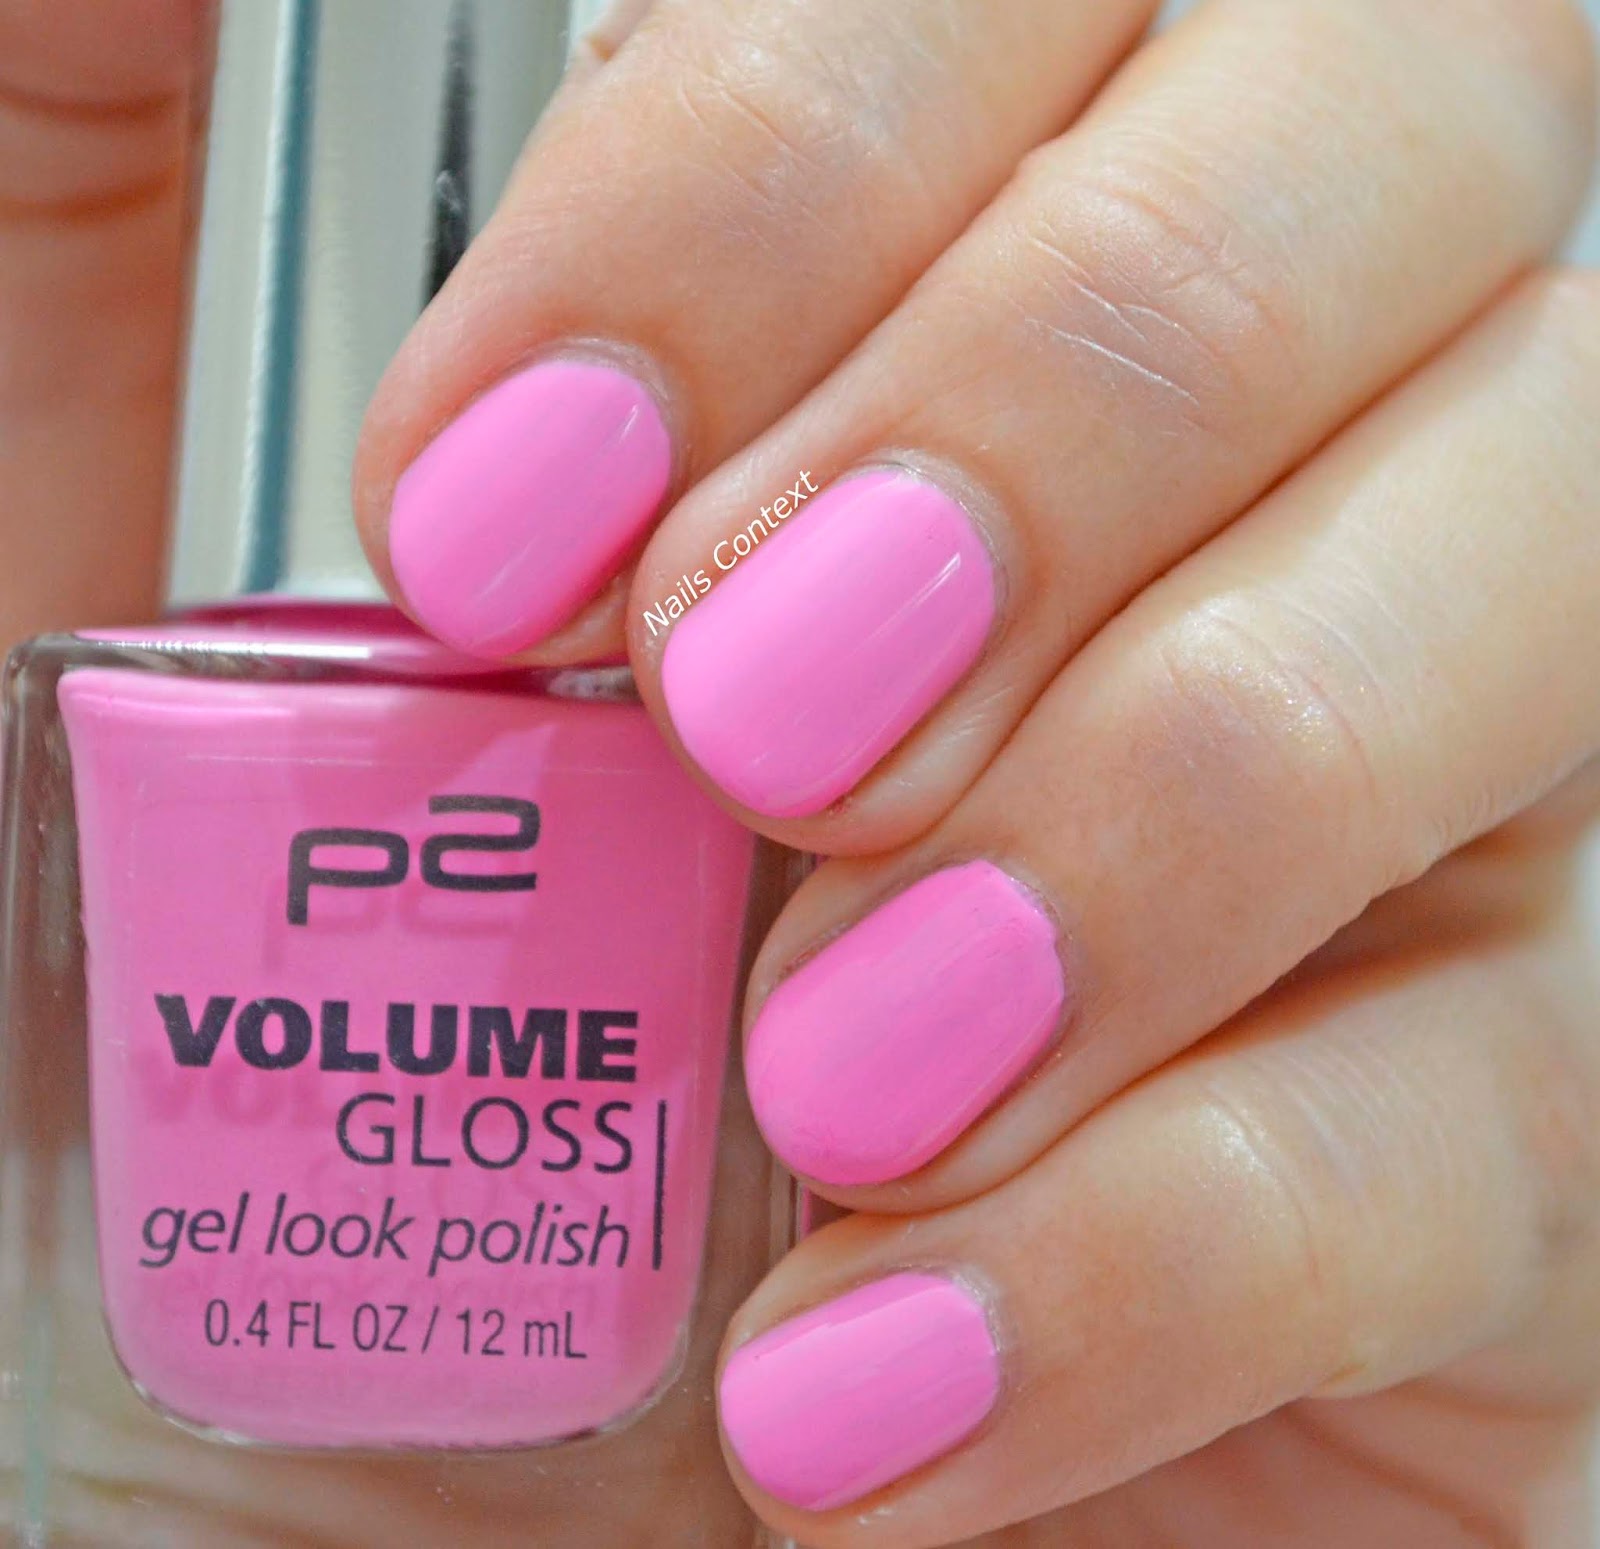 Nails Context: P2 Cosmetics | Volume Gloss Nail Polish